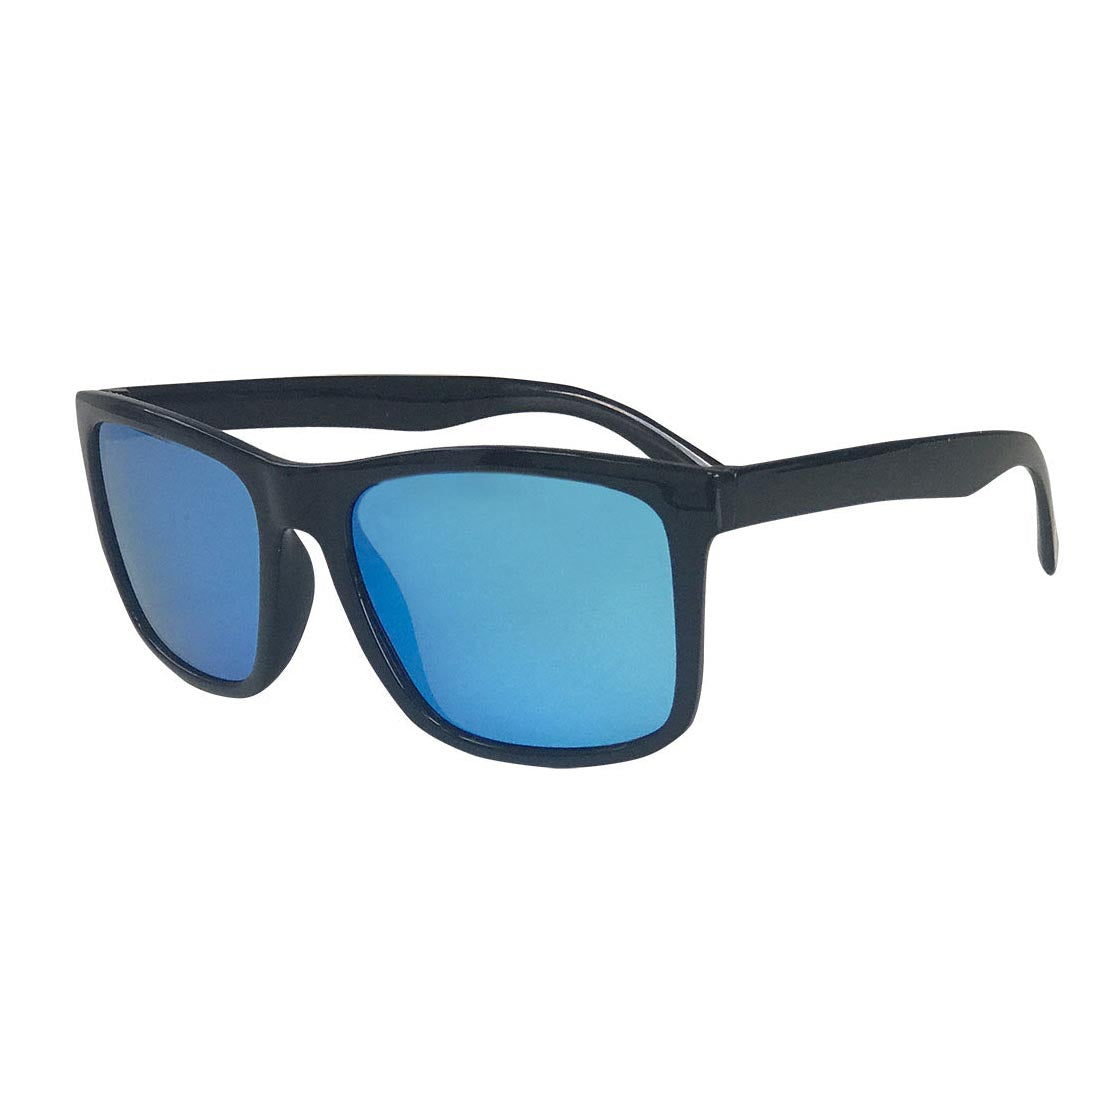 SHOGLA™ 1010 BLACK/BLUE Okulary przeciwsłoneczne Shogla.com